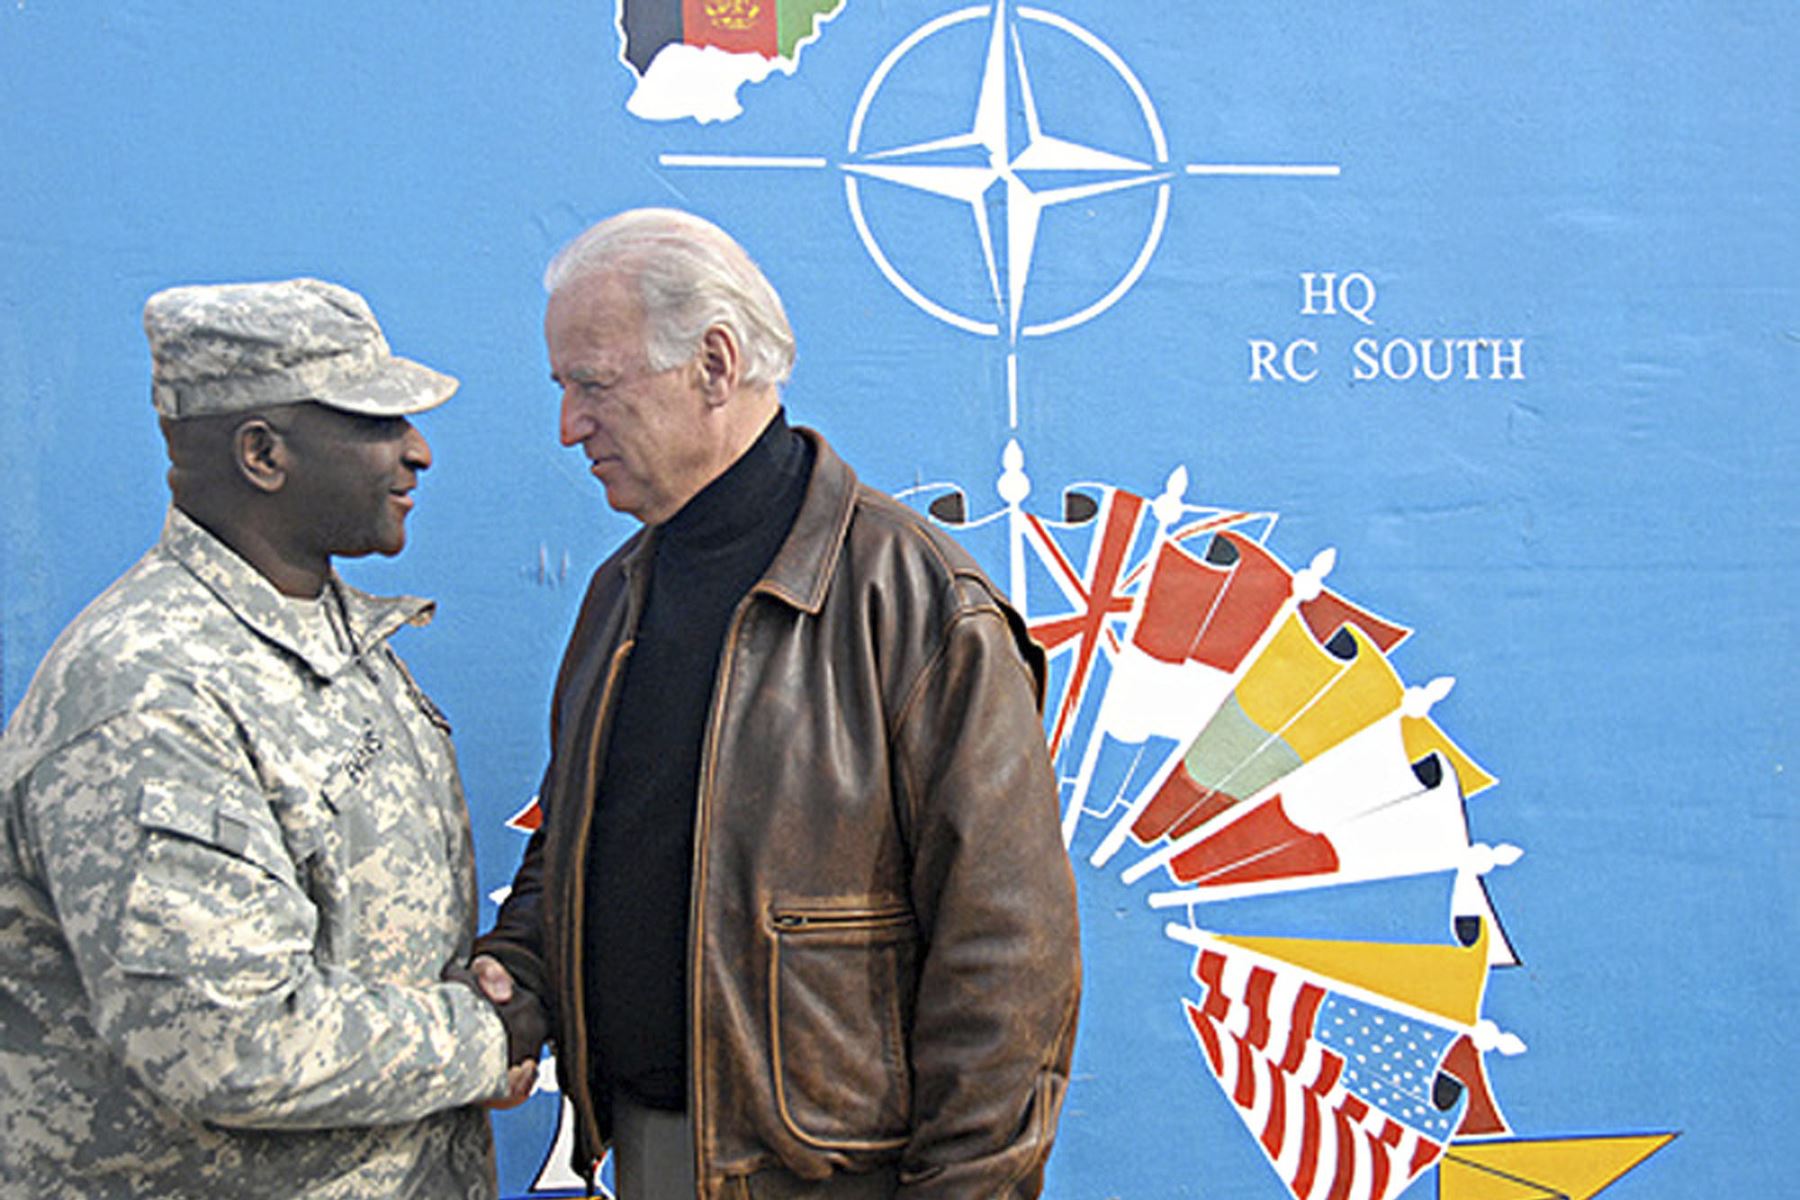 El vicepresidente electo de la Fuerza Internacional de Asistencia para la Seguridad (ISAF), Joe Biden, saluda a un soldado desplegado en la Fuerza Internacional para la Asistencia para la Seguridad (ISAF) en el Comando Regional Sur, en Kandahar el 11 de enero de 2009.Foto: AFP